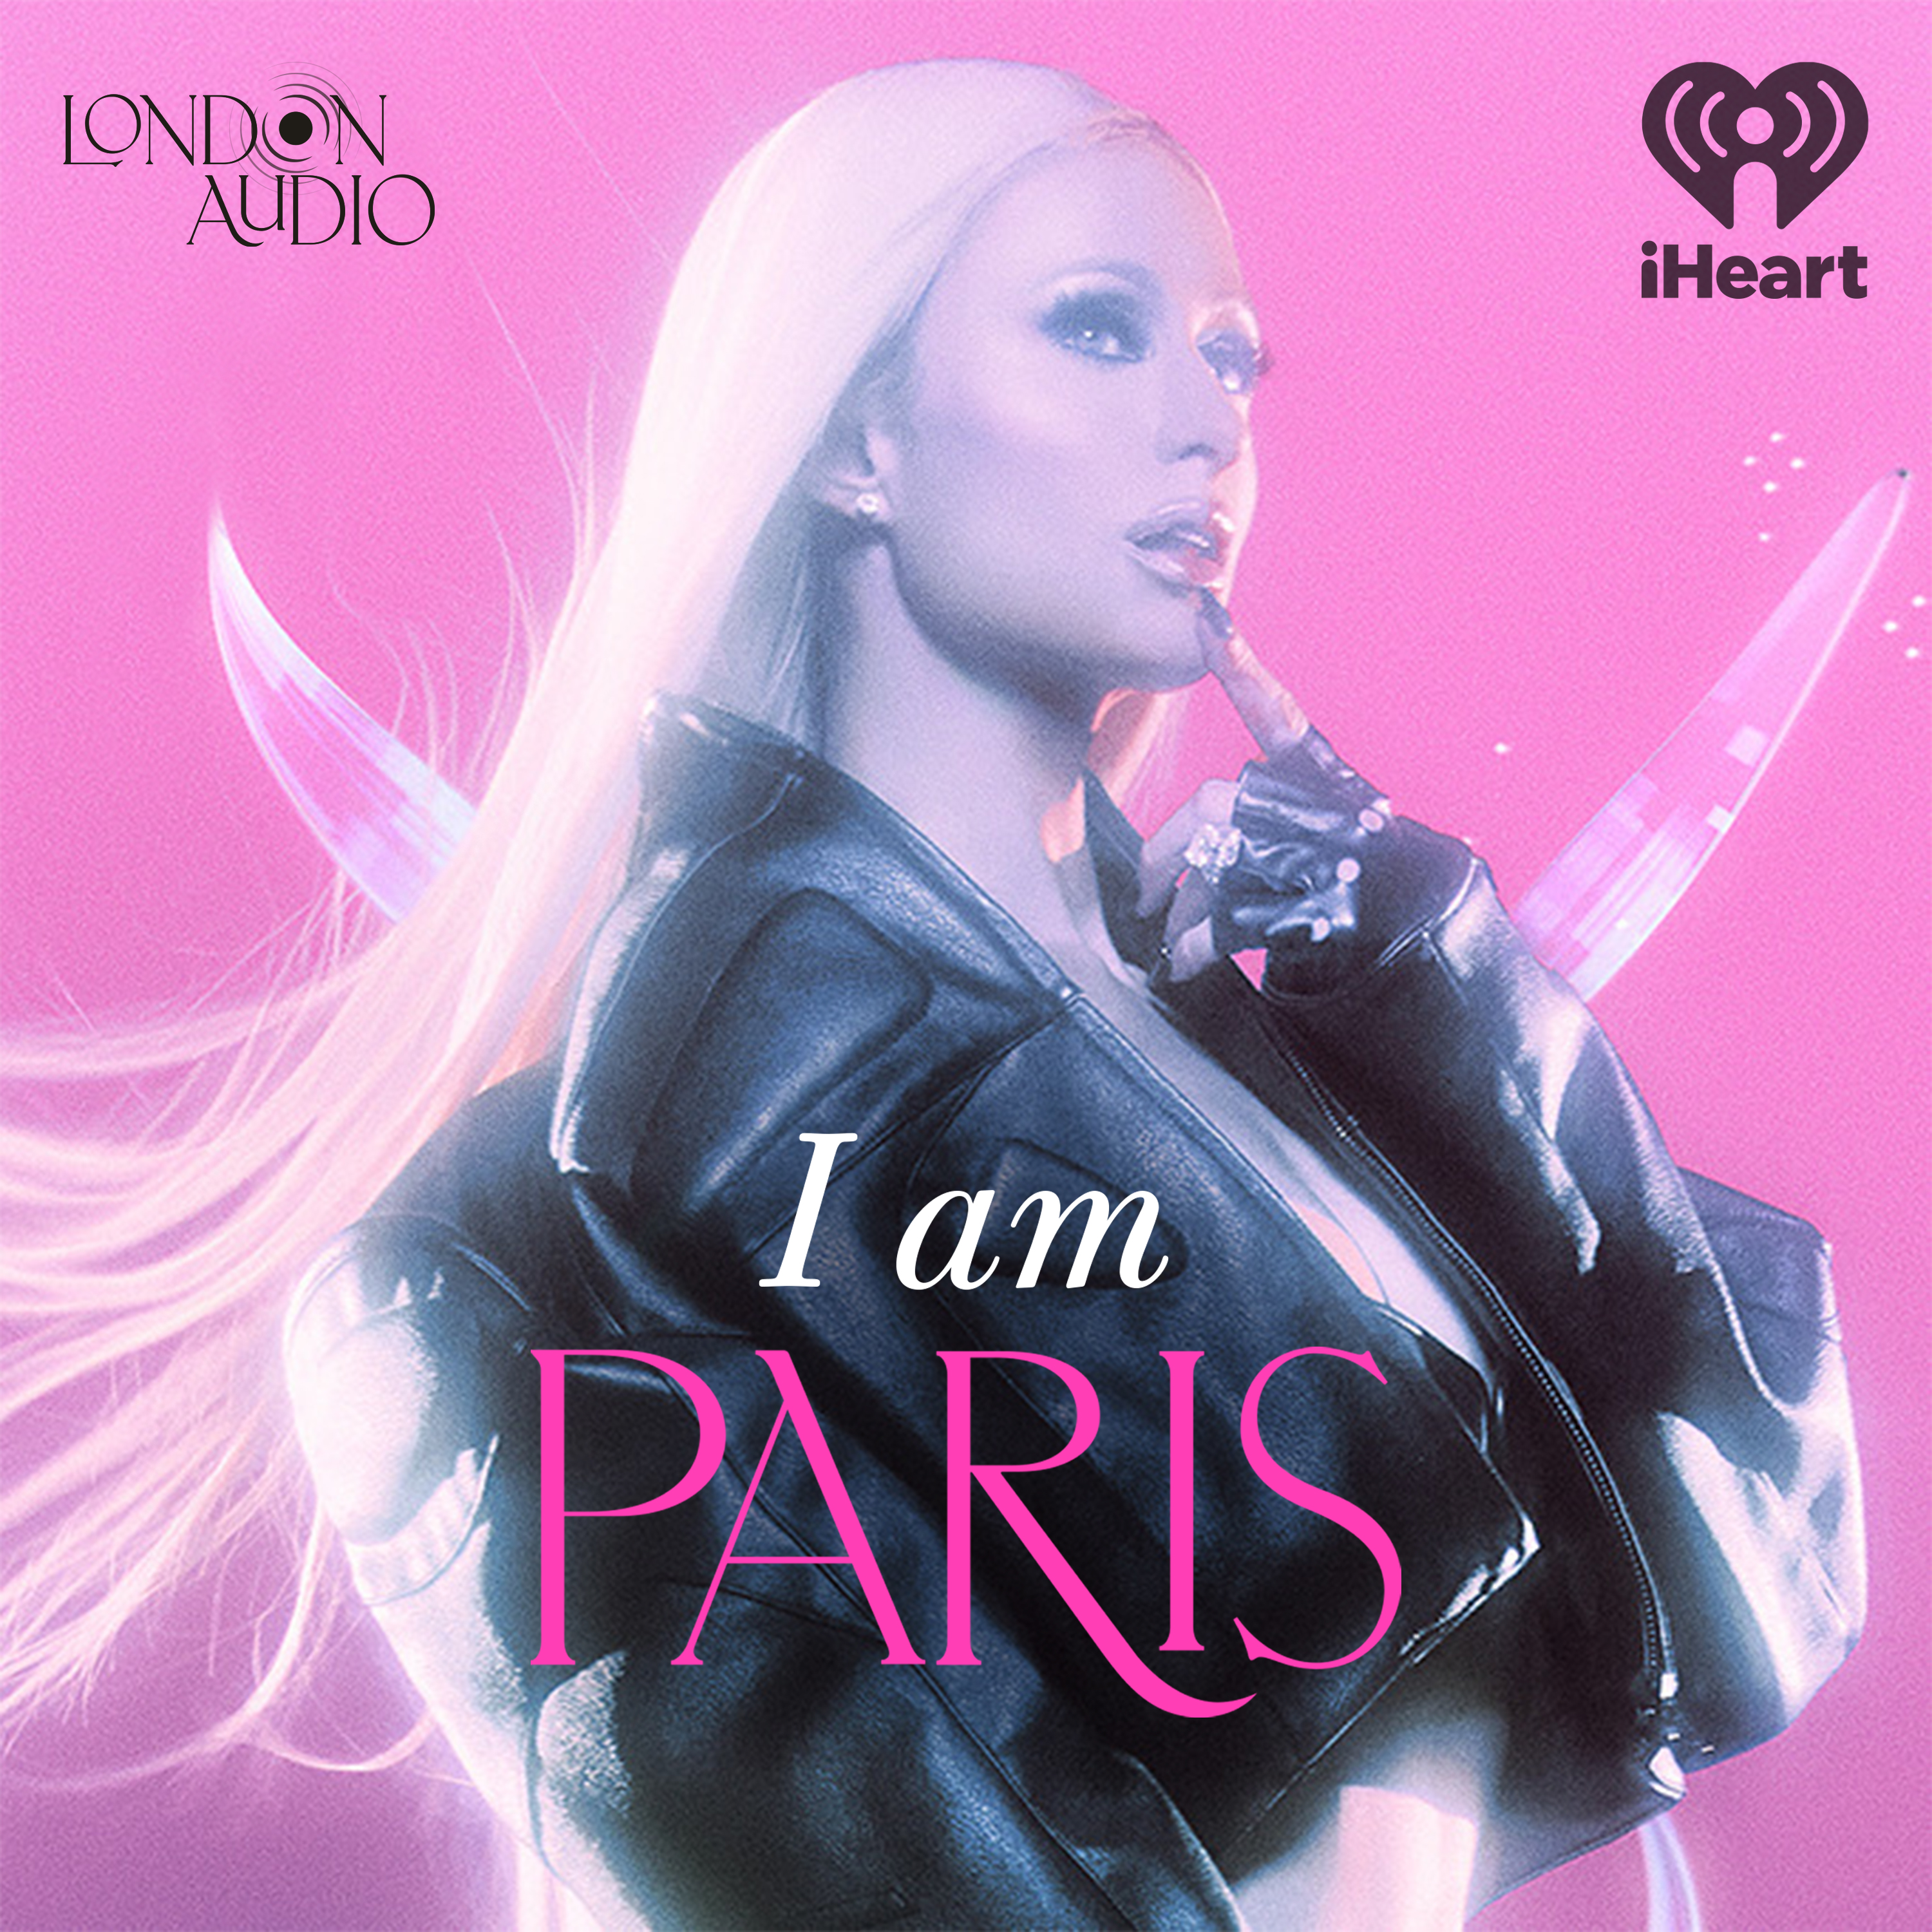 I am Paris